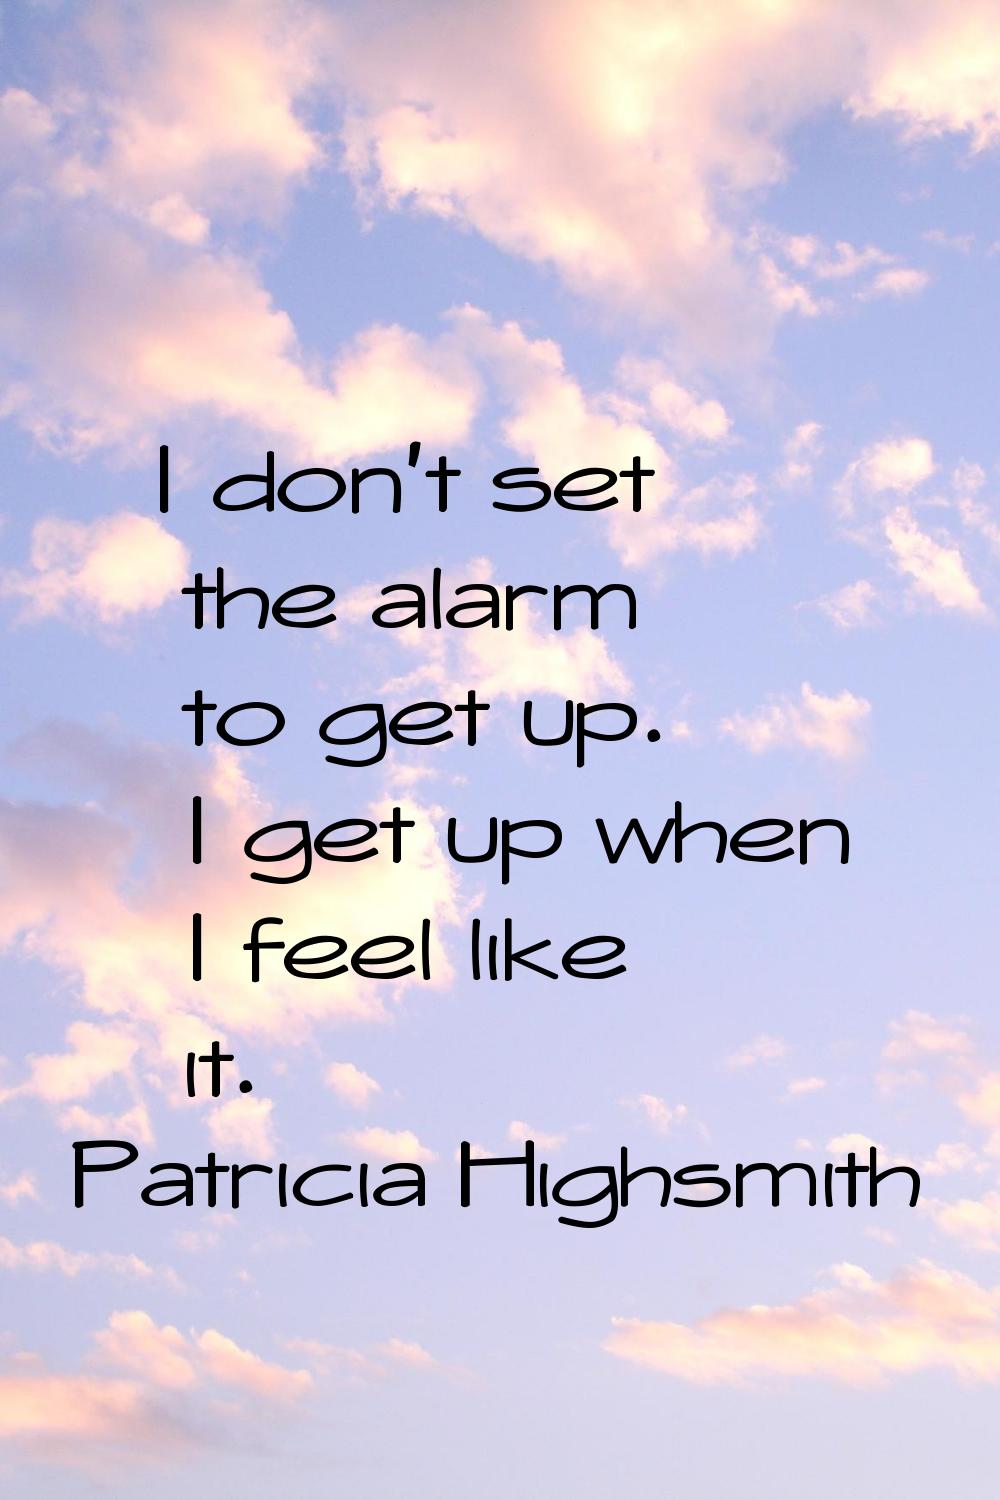 I don't set the alarm to get up. I get up when I feel like it.